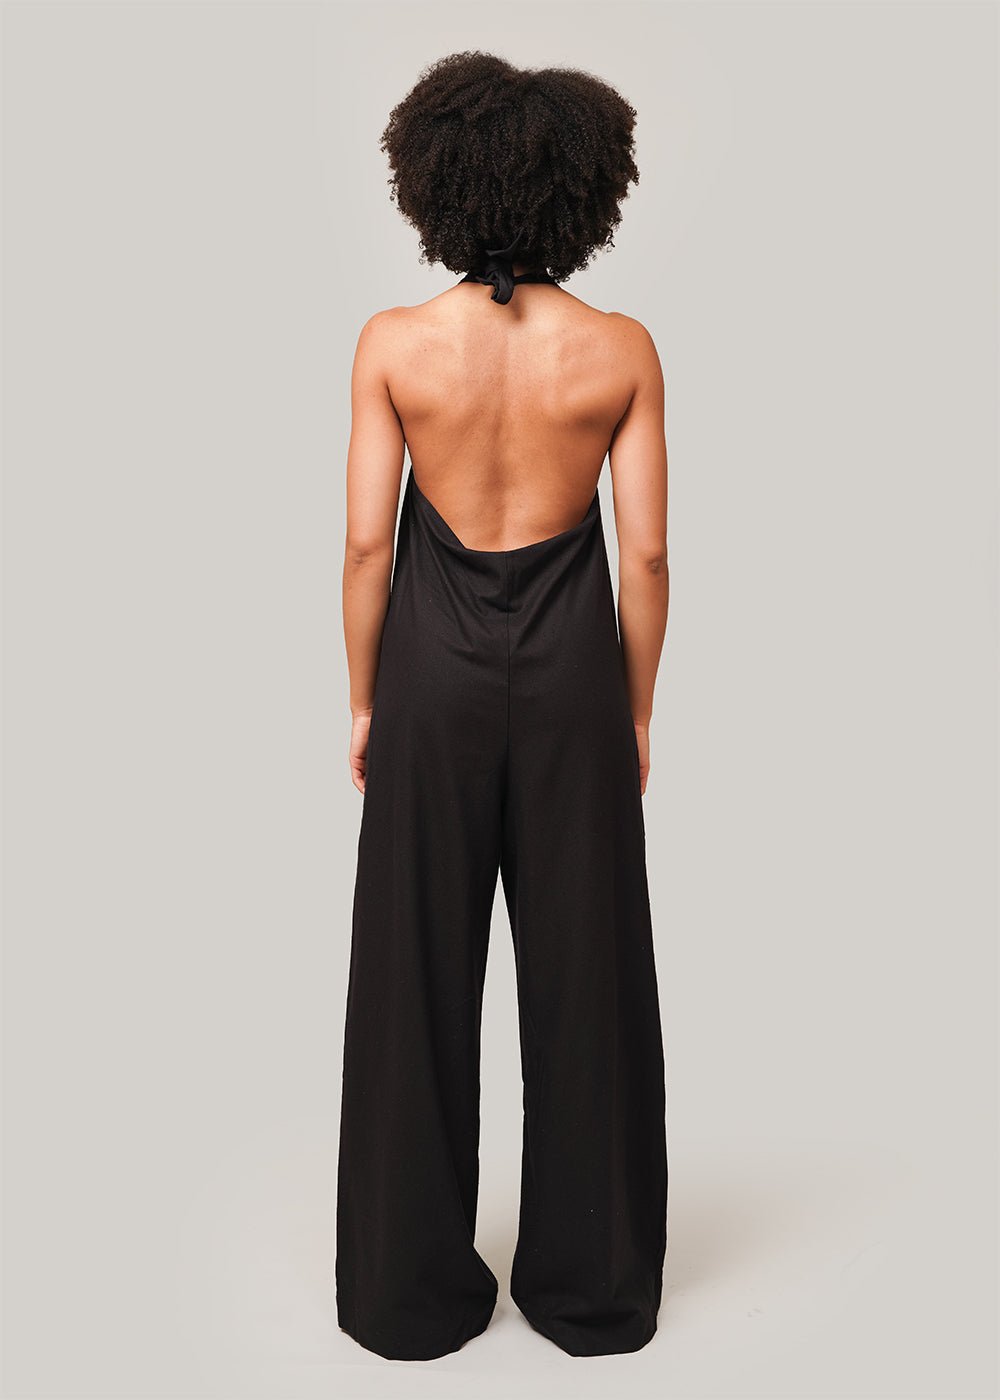 Baserange Black Trope Jumpsuit - New Classics Studios Sustainable Ethical Fashion Canada